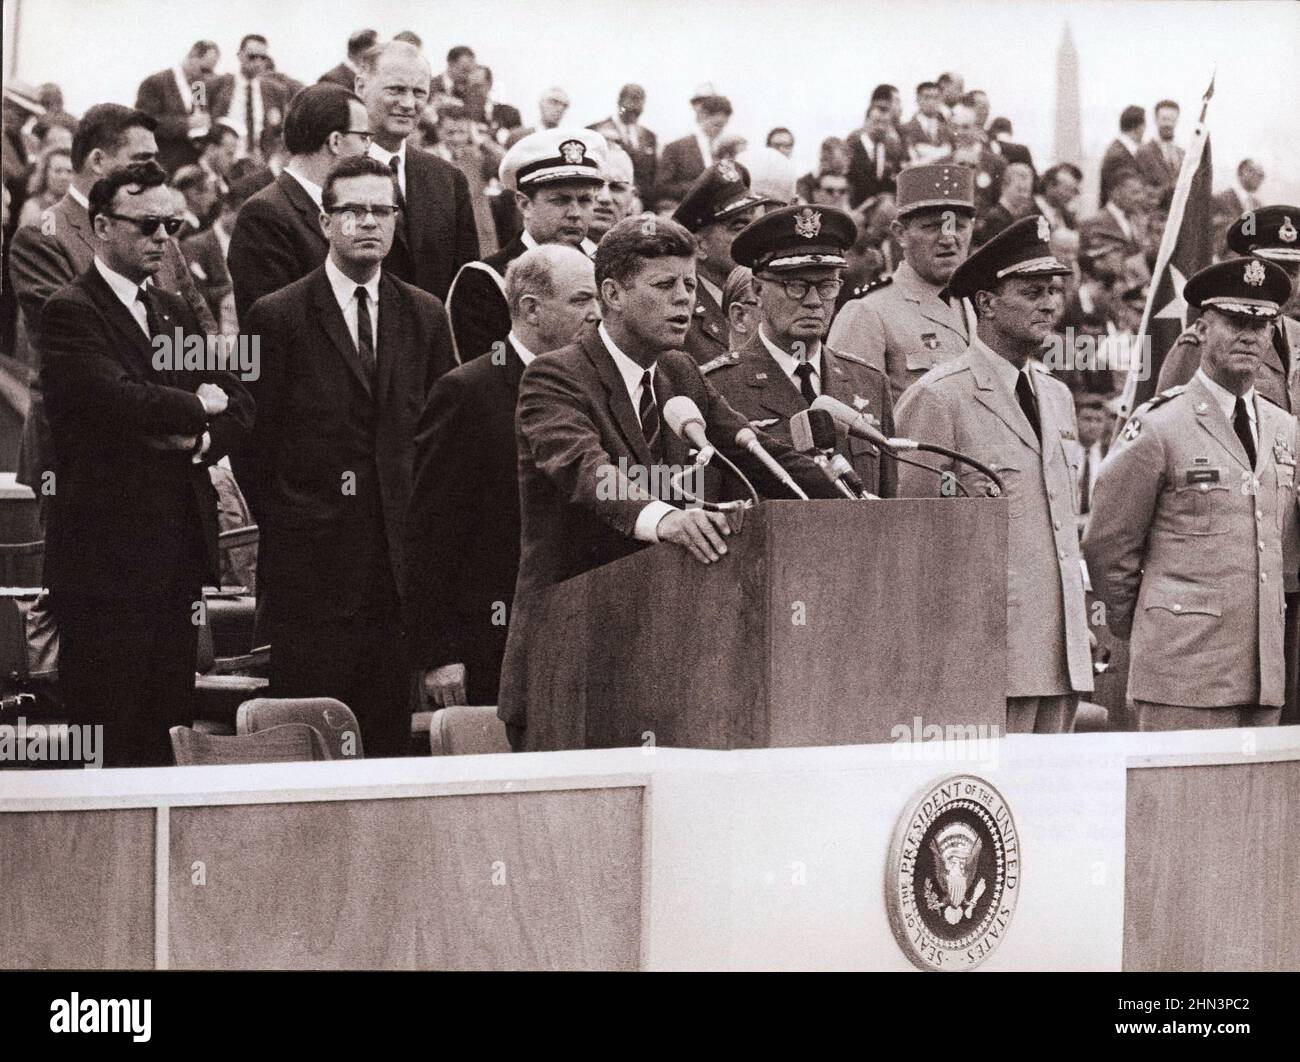 Vintage-Foto der Berliner Krise von 1961: Mauerbau. Präsident Kennedy in Deutschland. Frankfurt, 25. Juni 1963 - Präsident Kennedy besuchte heute den Th Stockfoto